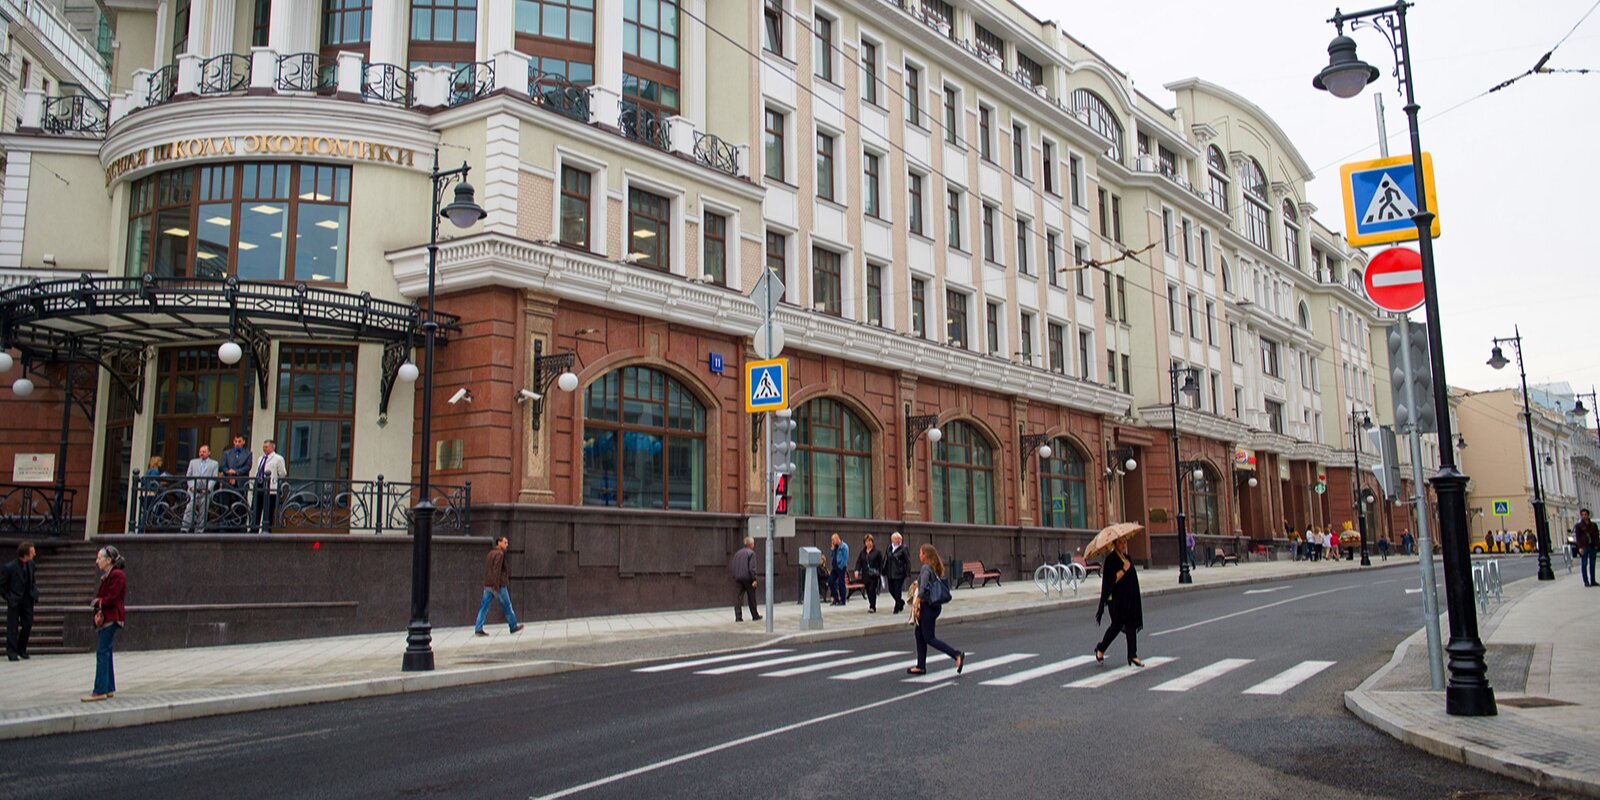 Эксперты обнаружили незаконно возводимые пристройки к зданию 1914 года по адресу: улица Мясницкая, дом 13, строение 2. Фото: сайт мэра Москвы